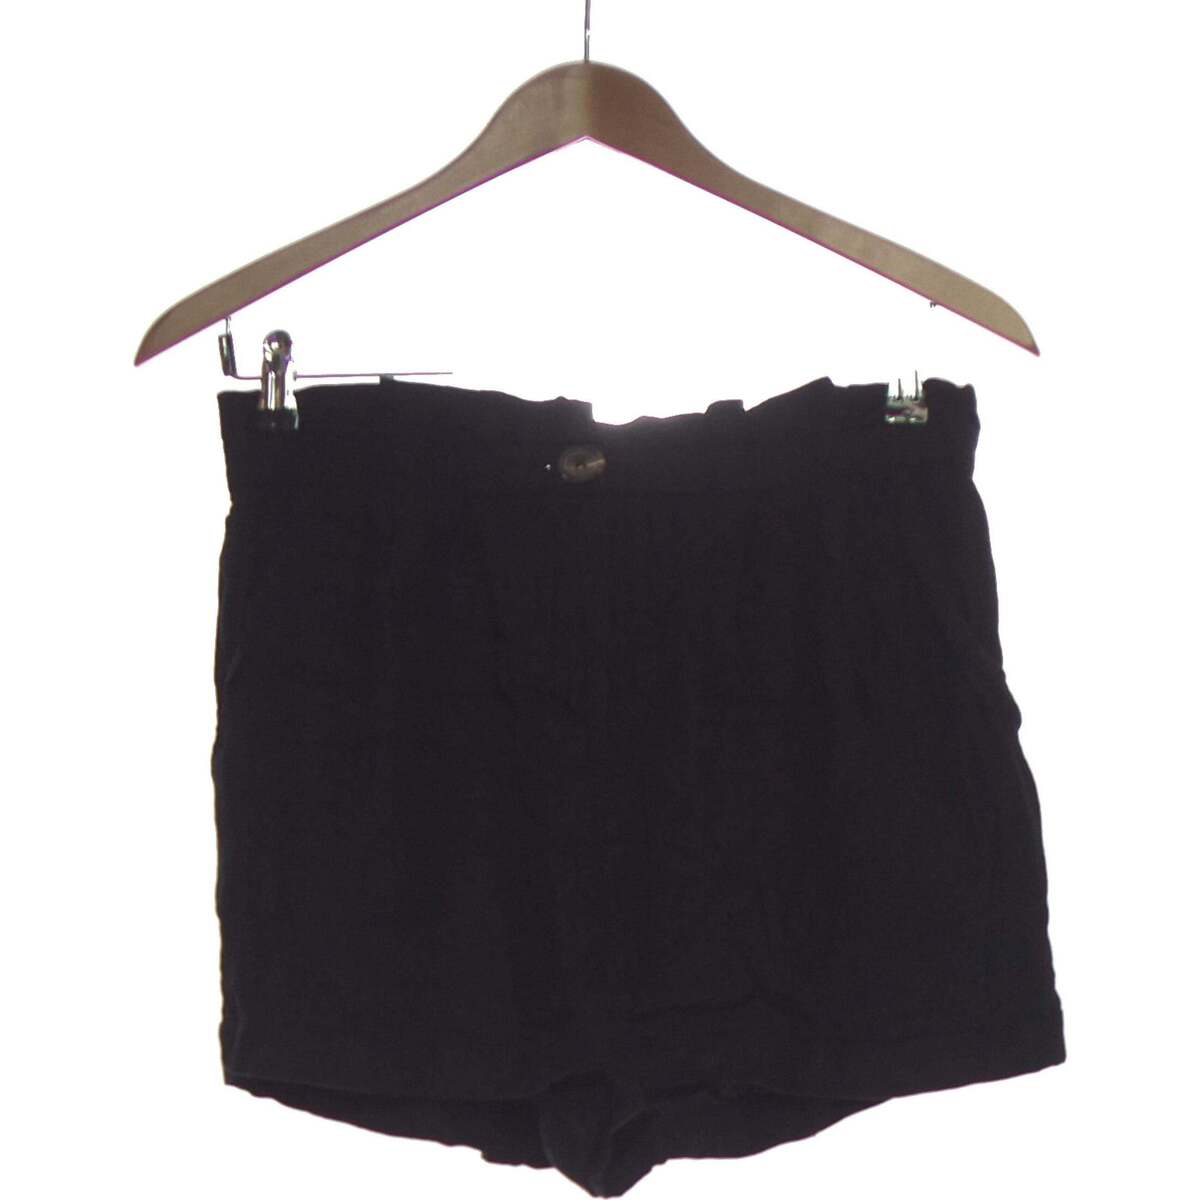 Vêtements Femme Shorts / Bermudas Pimkie short  36 - T1 - S Noir Noir